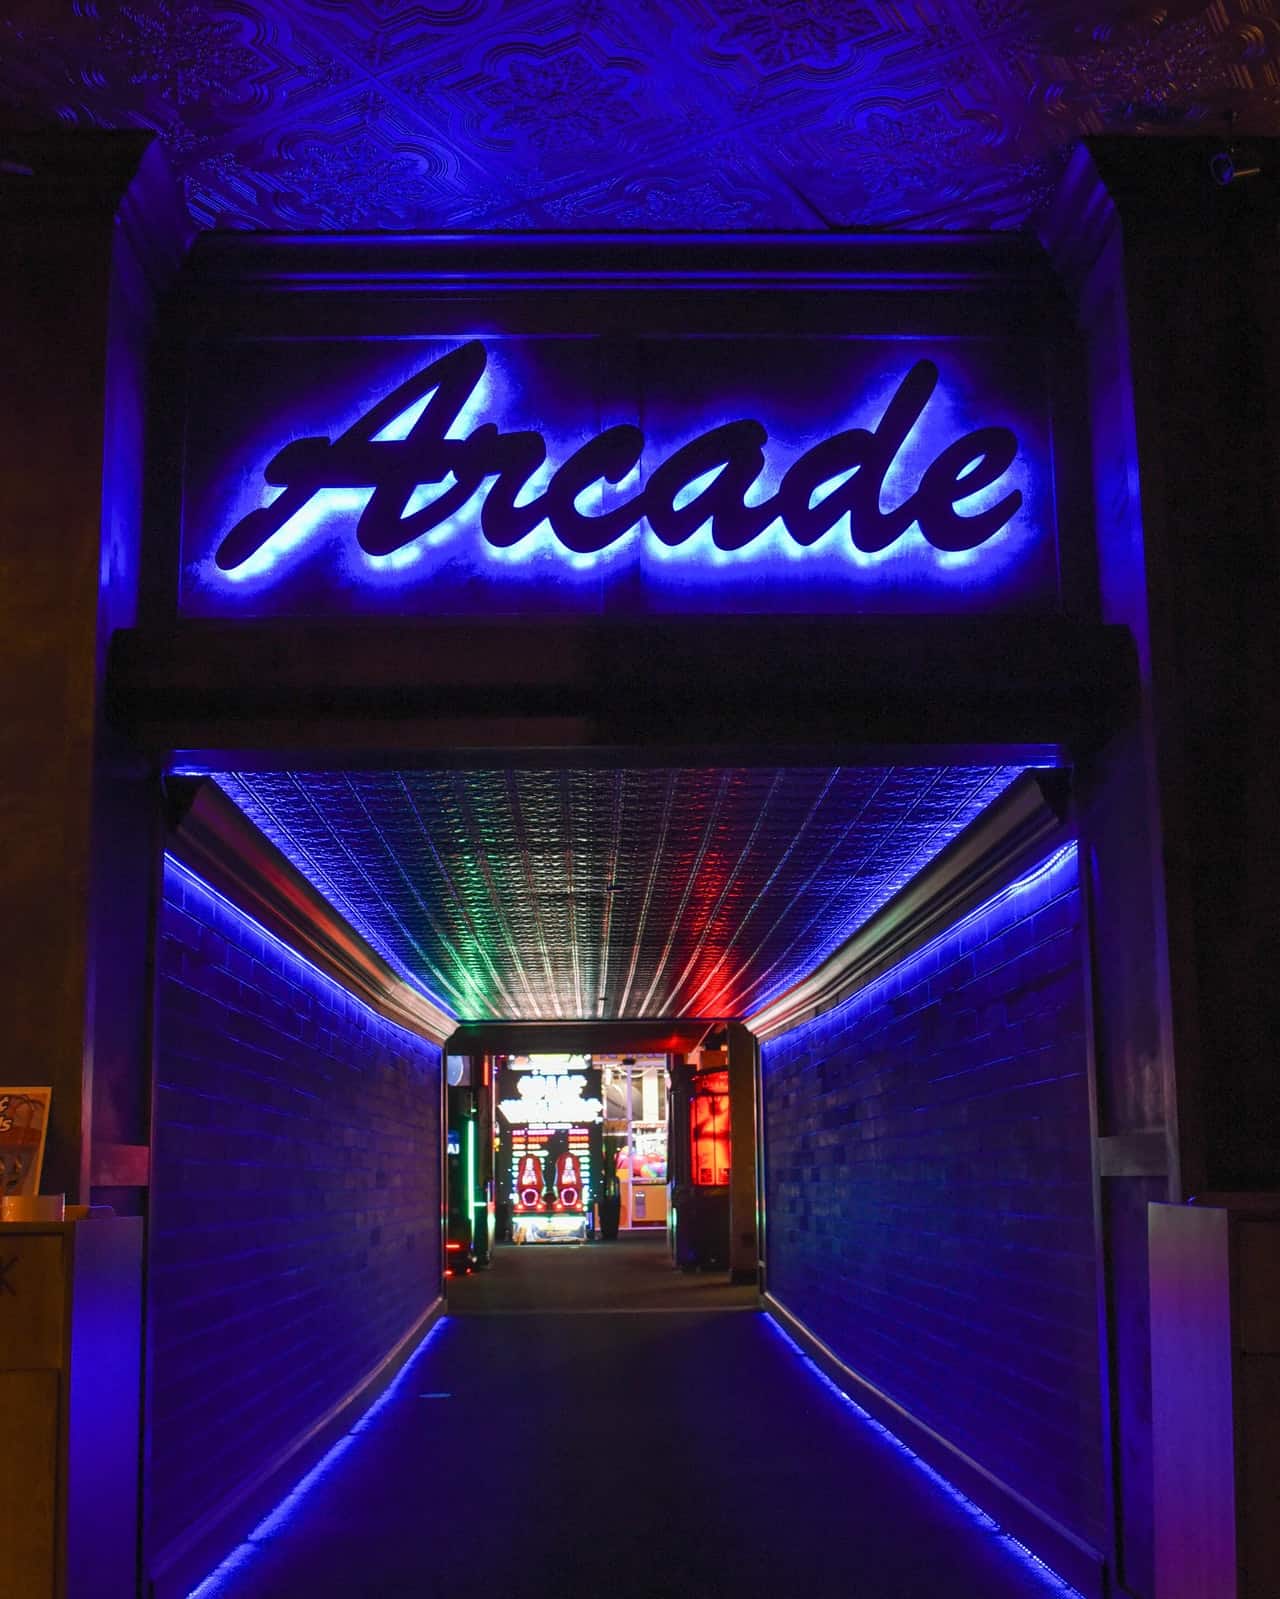 Entrance To An Arcade